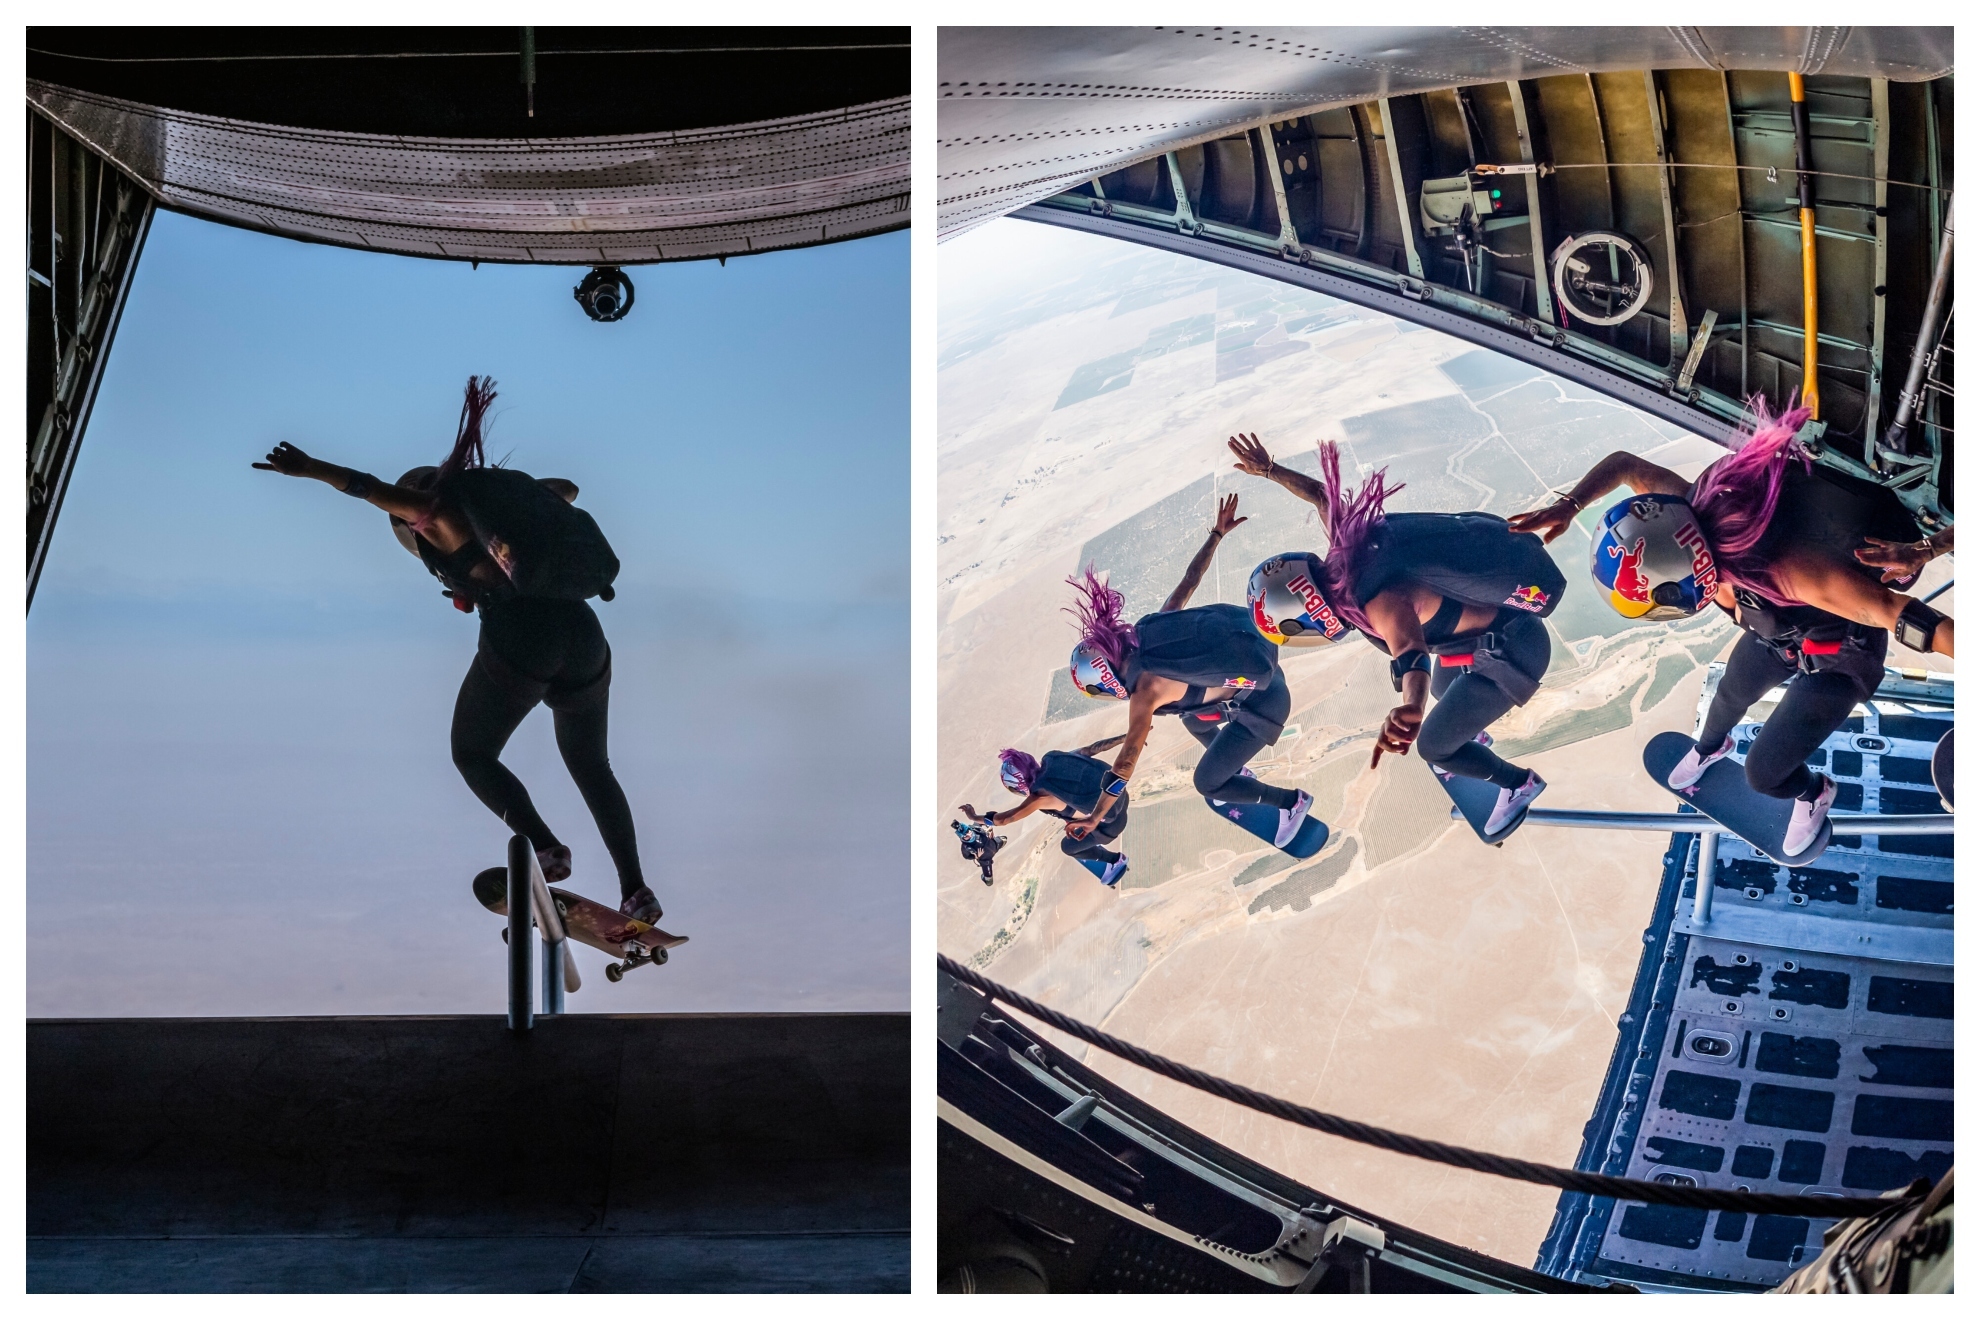 ¡Impresionante! Leticia Bufoni salta al vacío desde un avión en vuelo tras hacer un truco con su skate